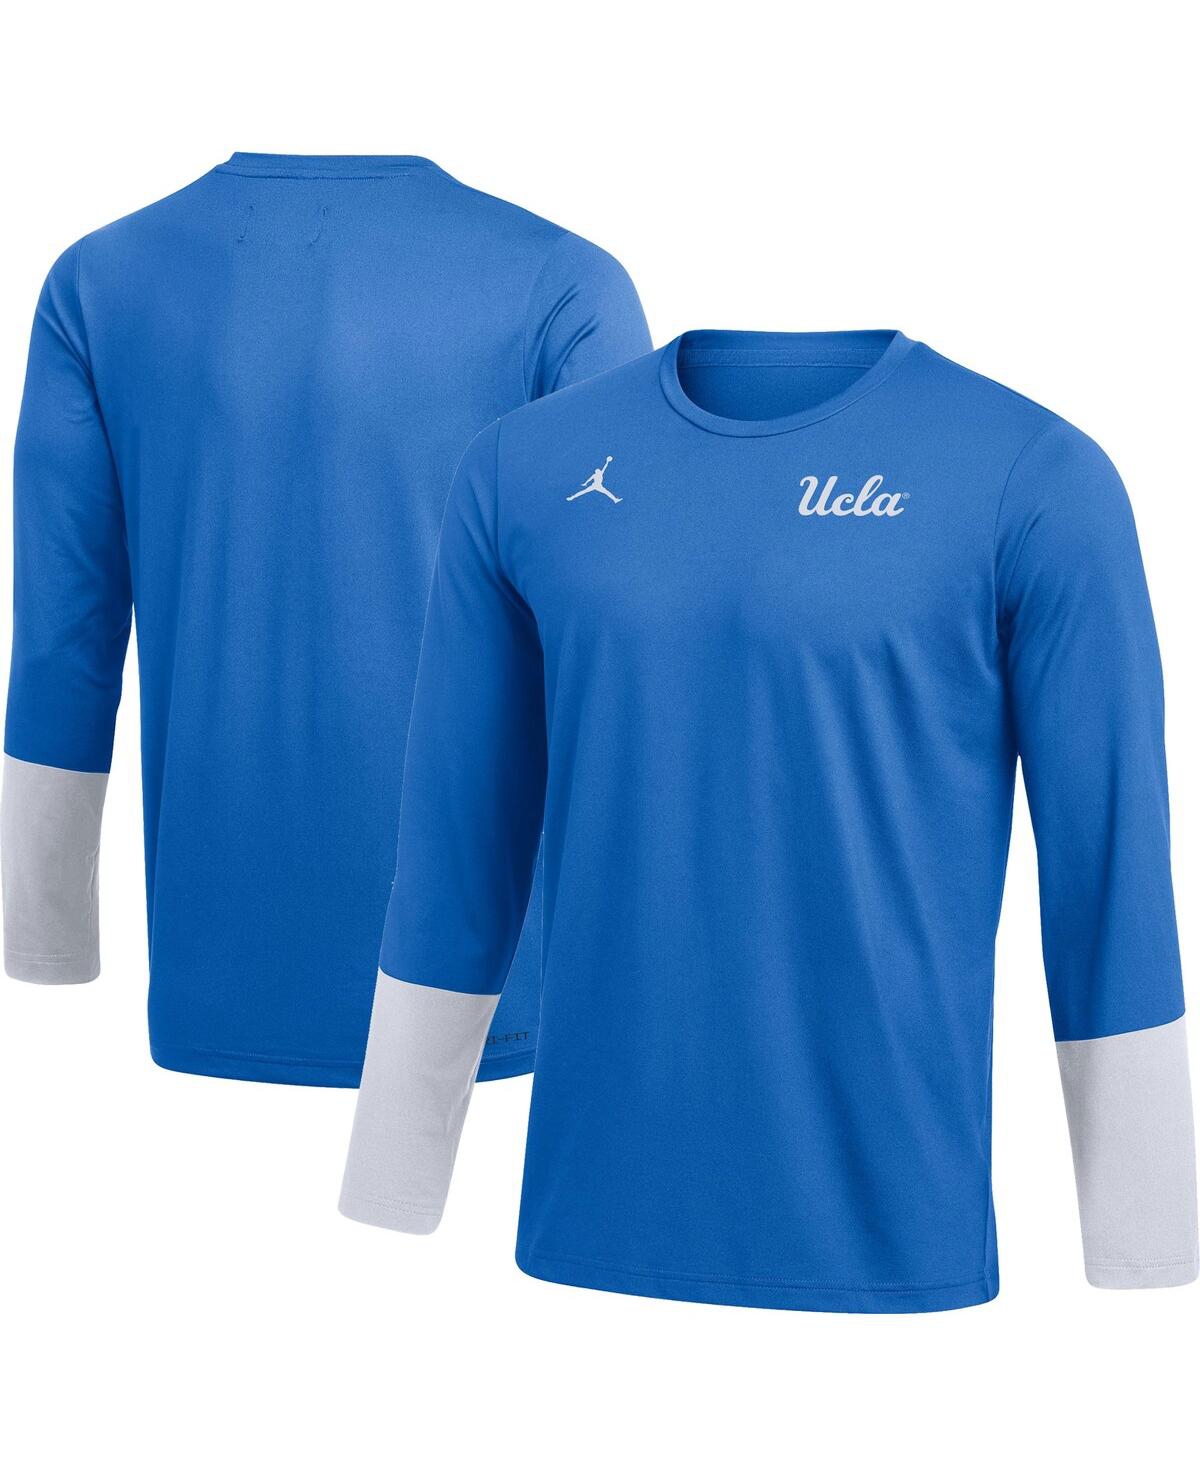 Shop Jordan Men's  Blue Ucla Bruins Football Performance Long Sleeve T-shirt